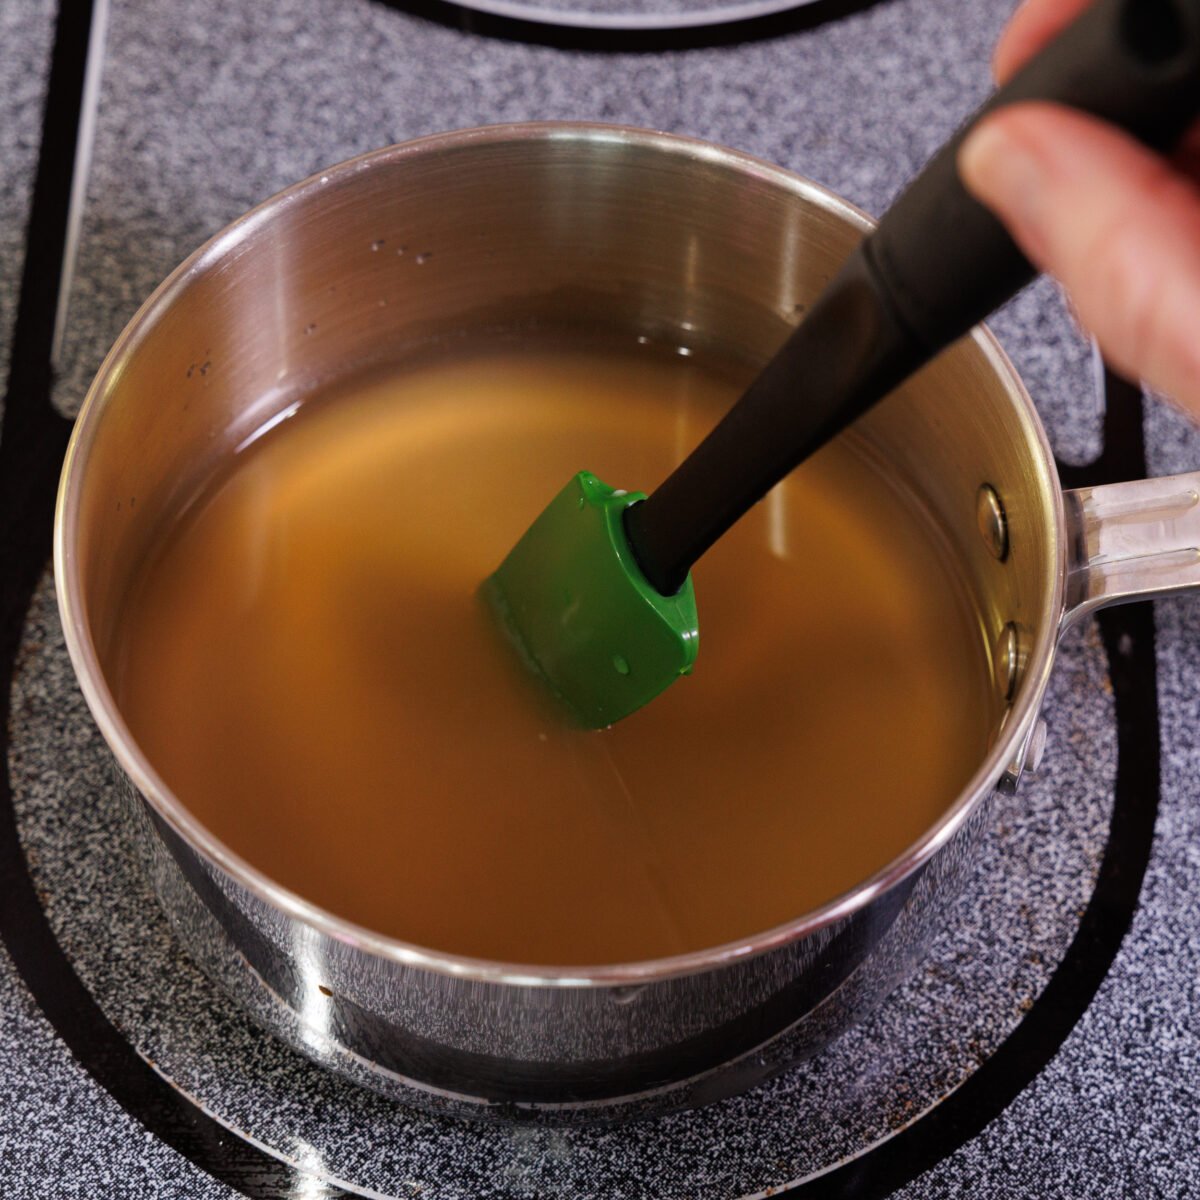 pickling liquid in a small saucepan.